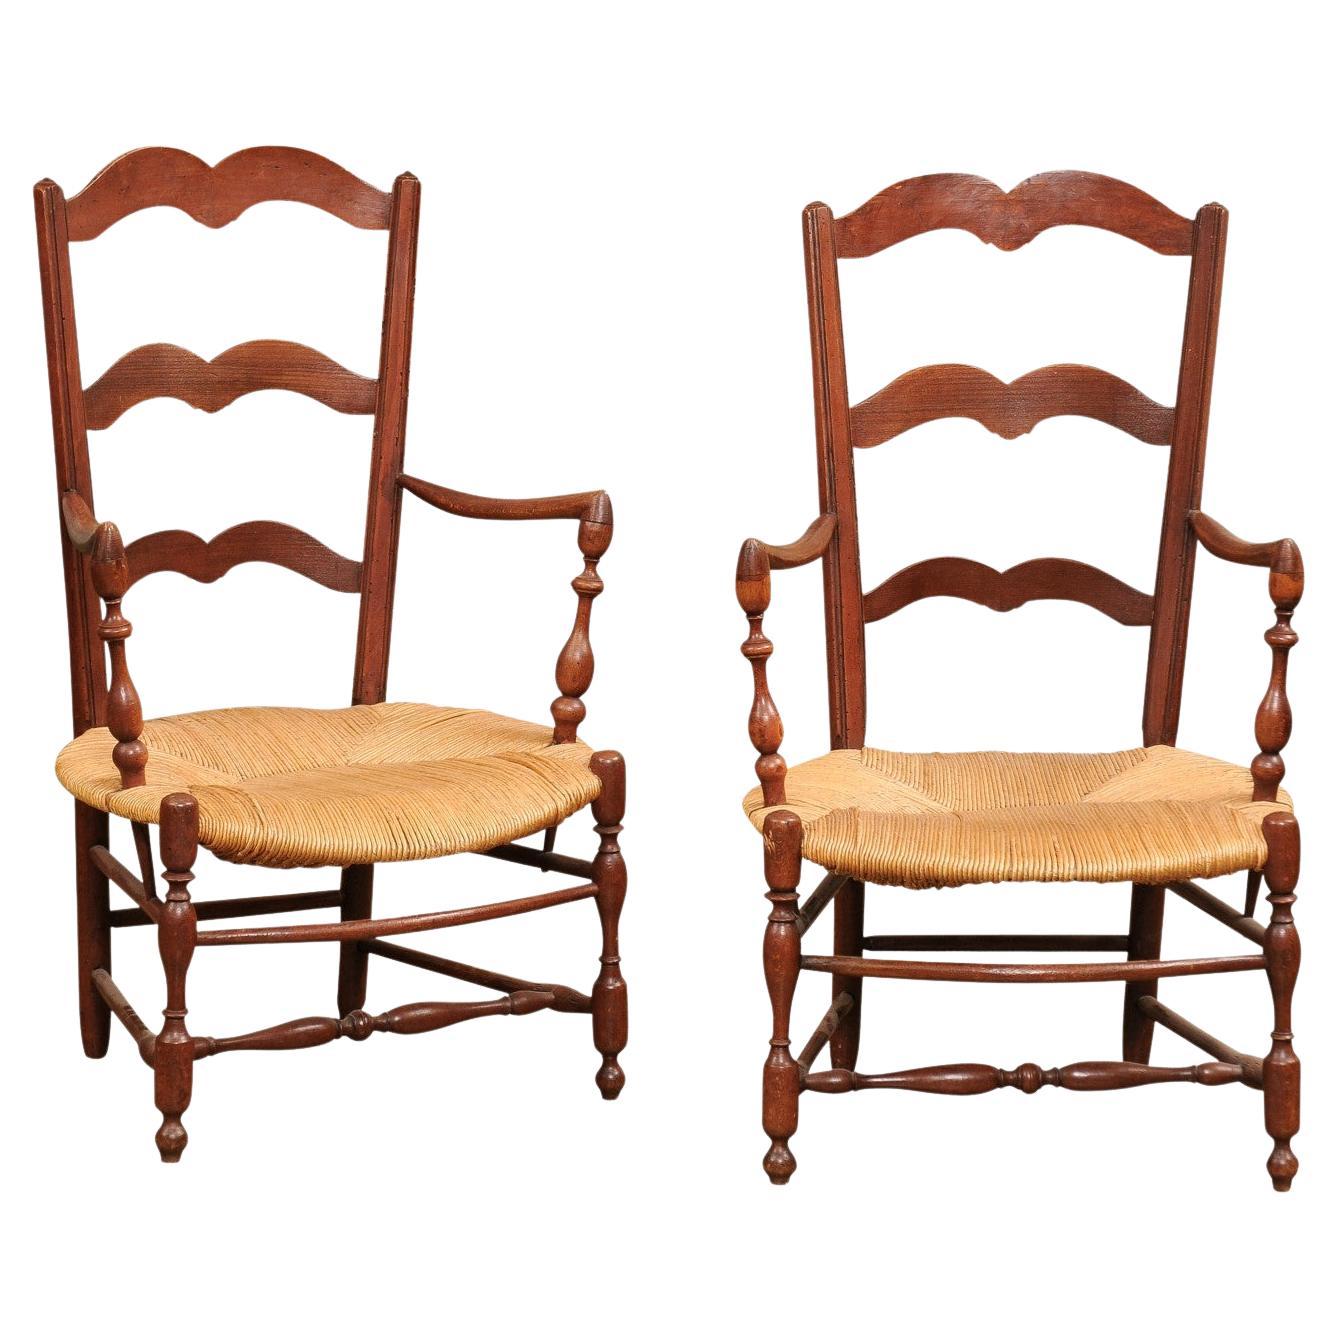 Rustikale französische Sessel aus Nussbaumholz mit Binsensitzen aus dem 19. Jahrhundert, einzeln verkauft